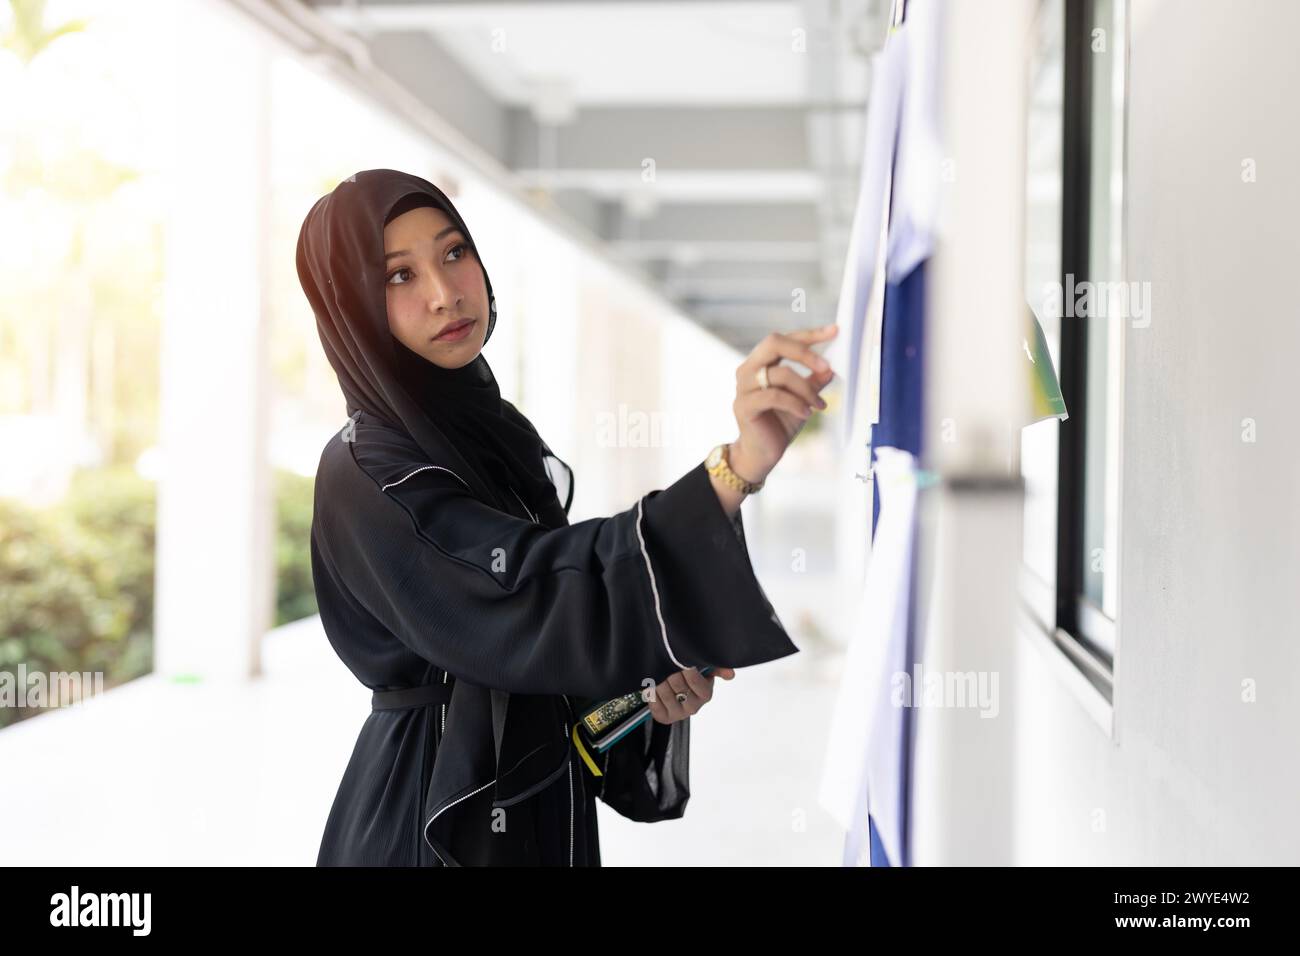 University muslim teen girl à la recherche d'un emploi à temps partiel poste de travail au panneau publicitaire des emplois du campus. Les Arabes regardent le panneau d'affichage. Banque D'Images